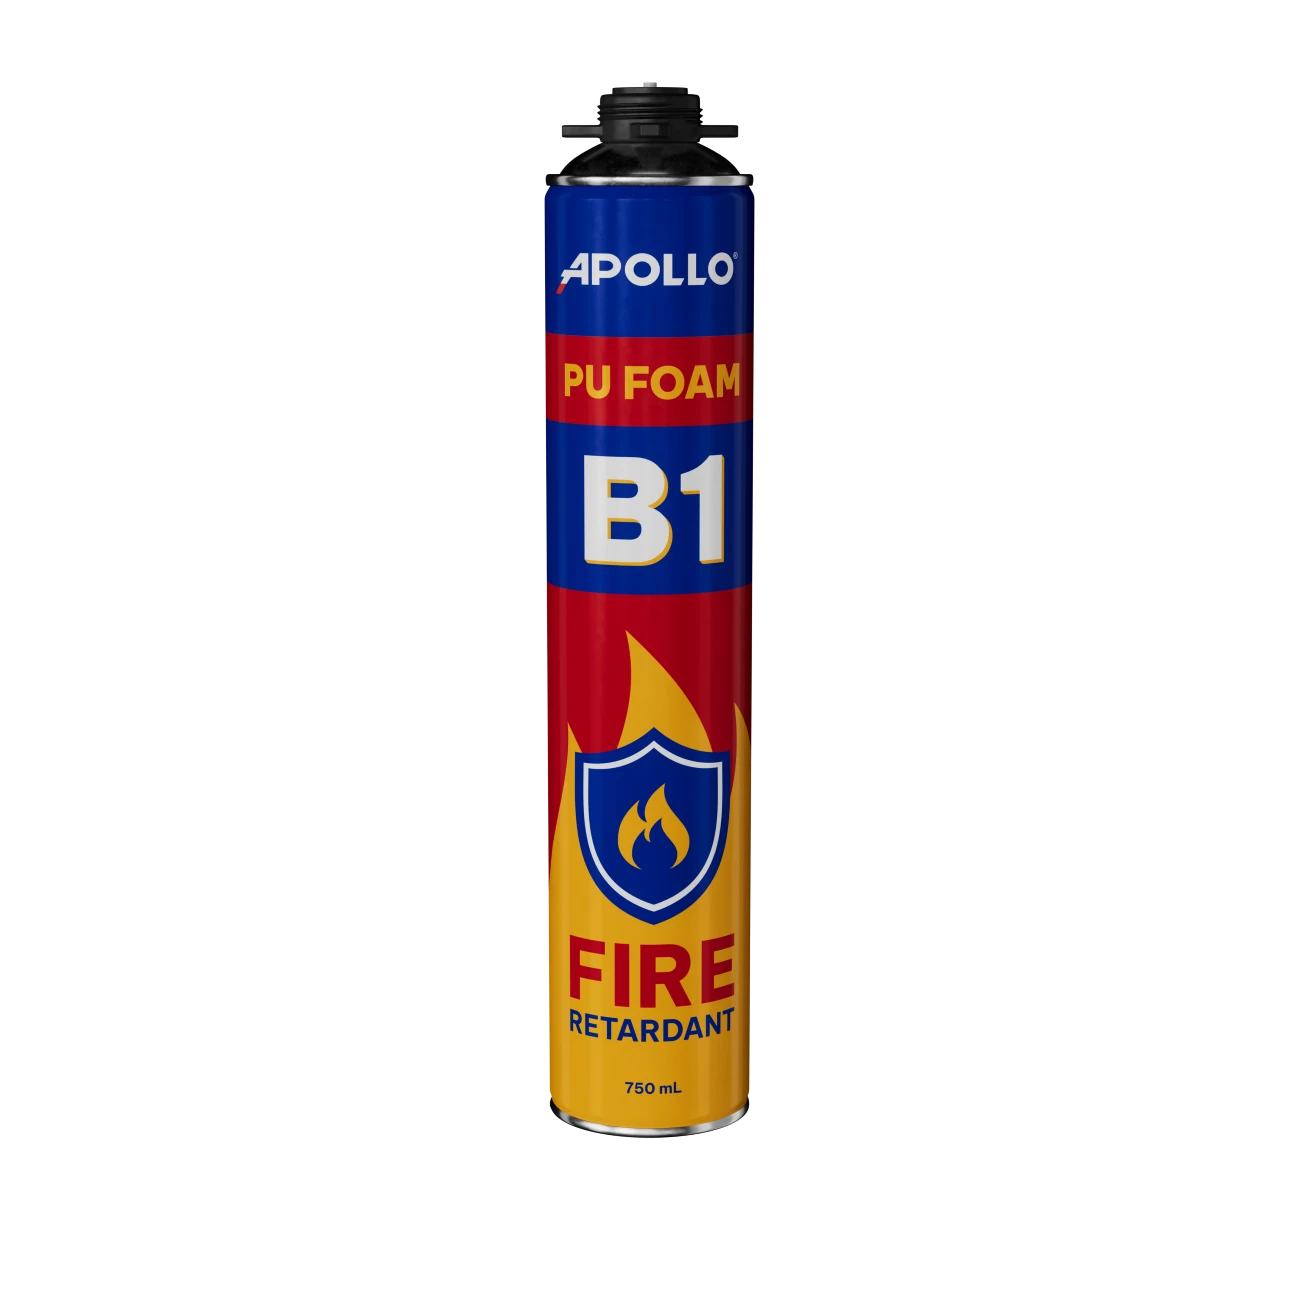 Apollo PU Foam B1 - Đạt tiêu chuẩn chống cháy B1